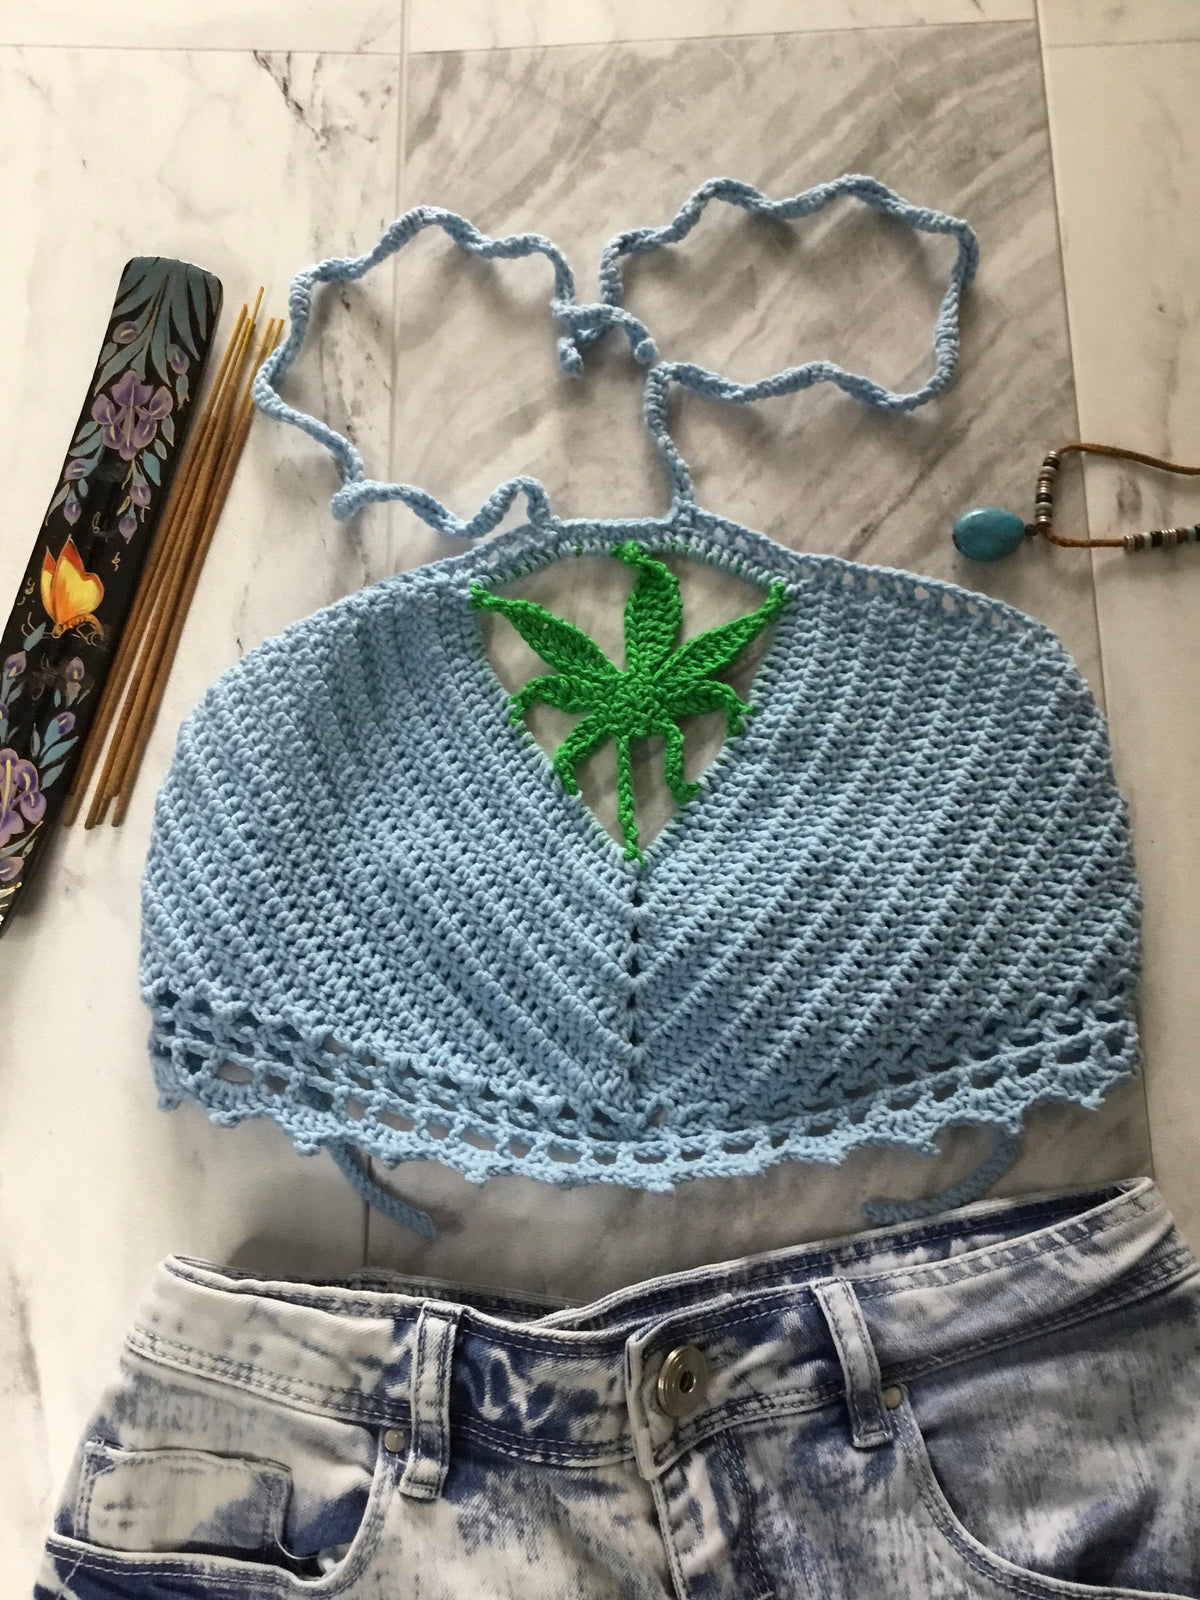 Handmade Crochet Herbal Leaf Halterneck Top